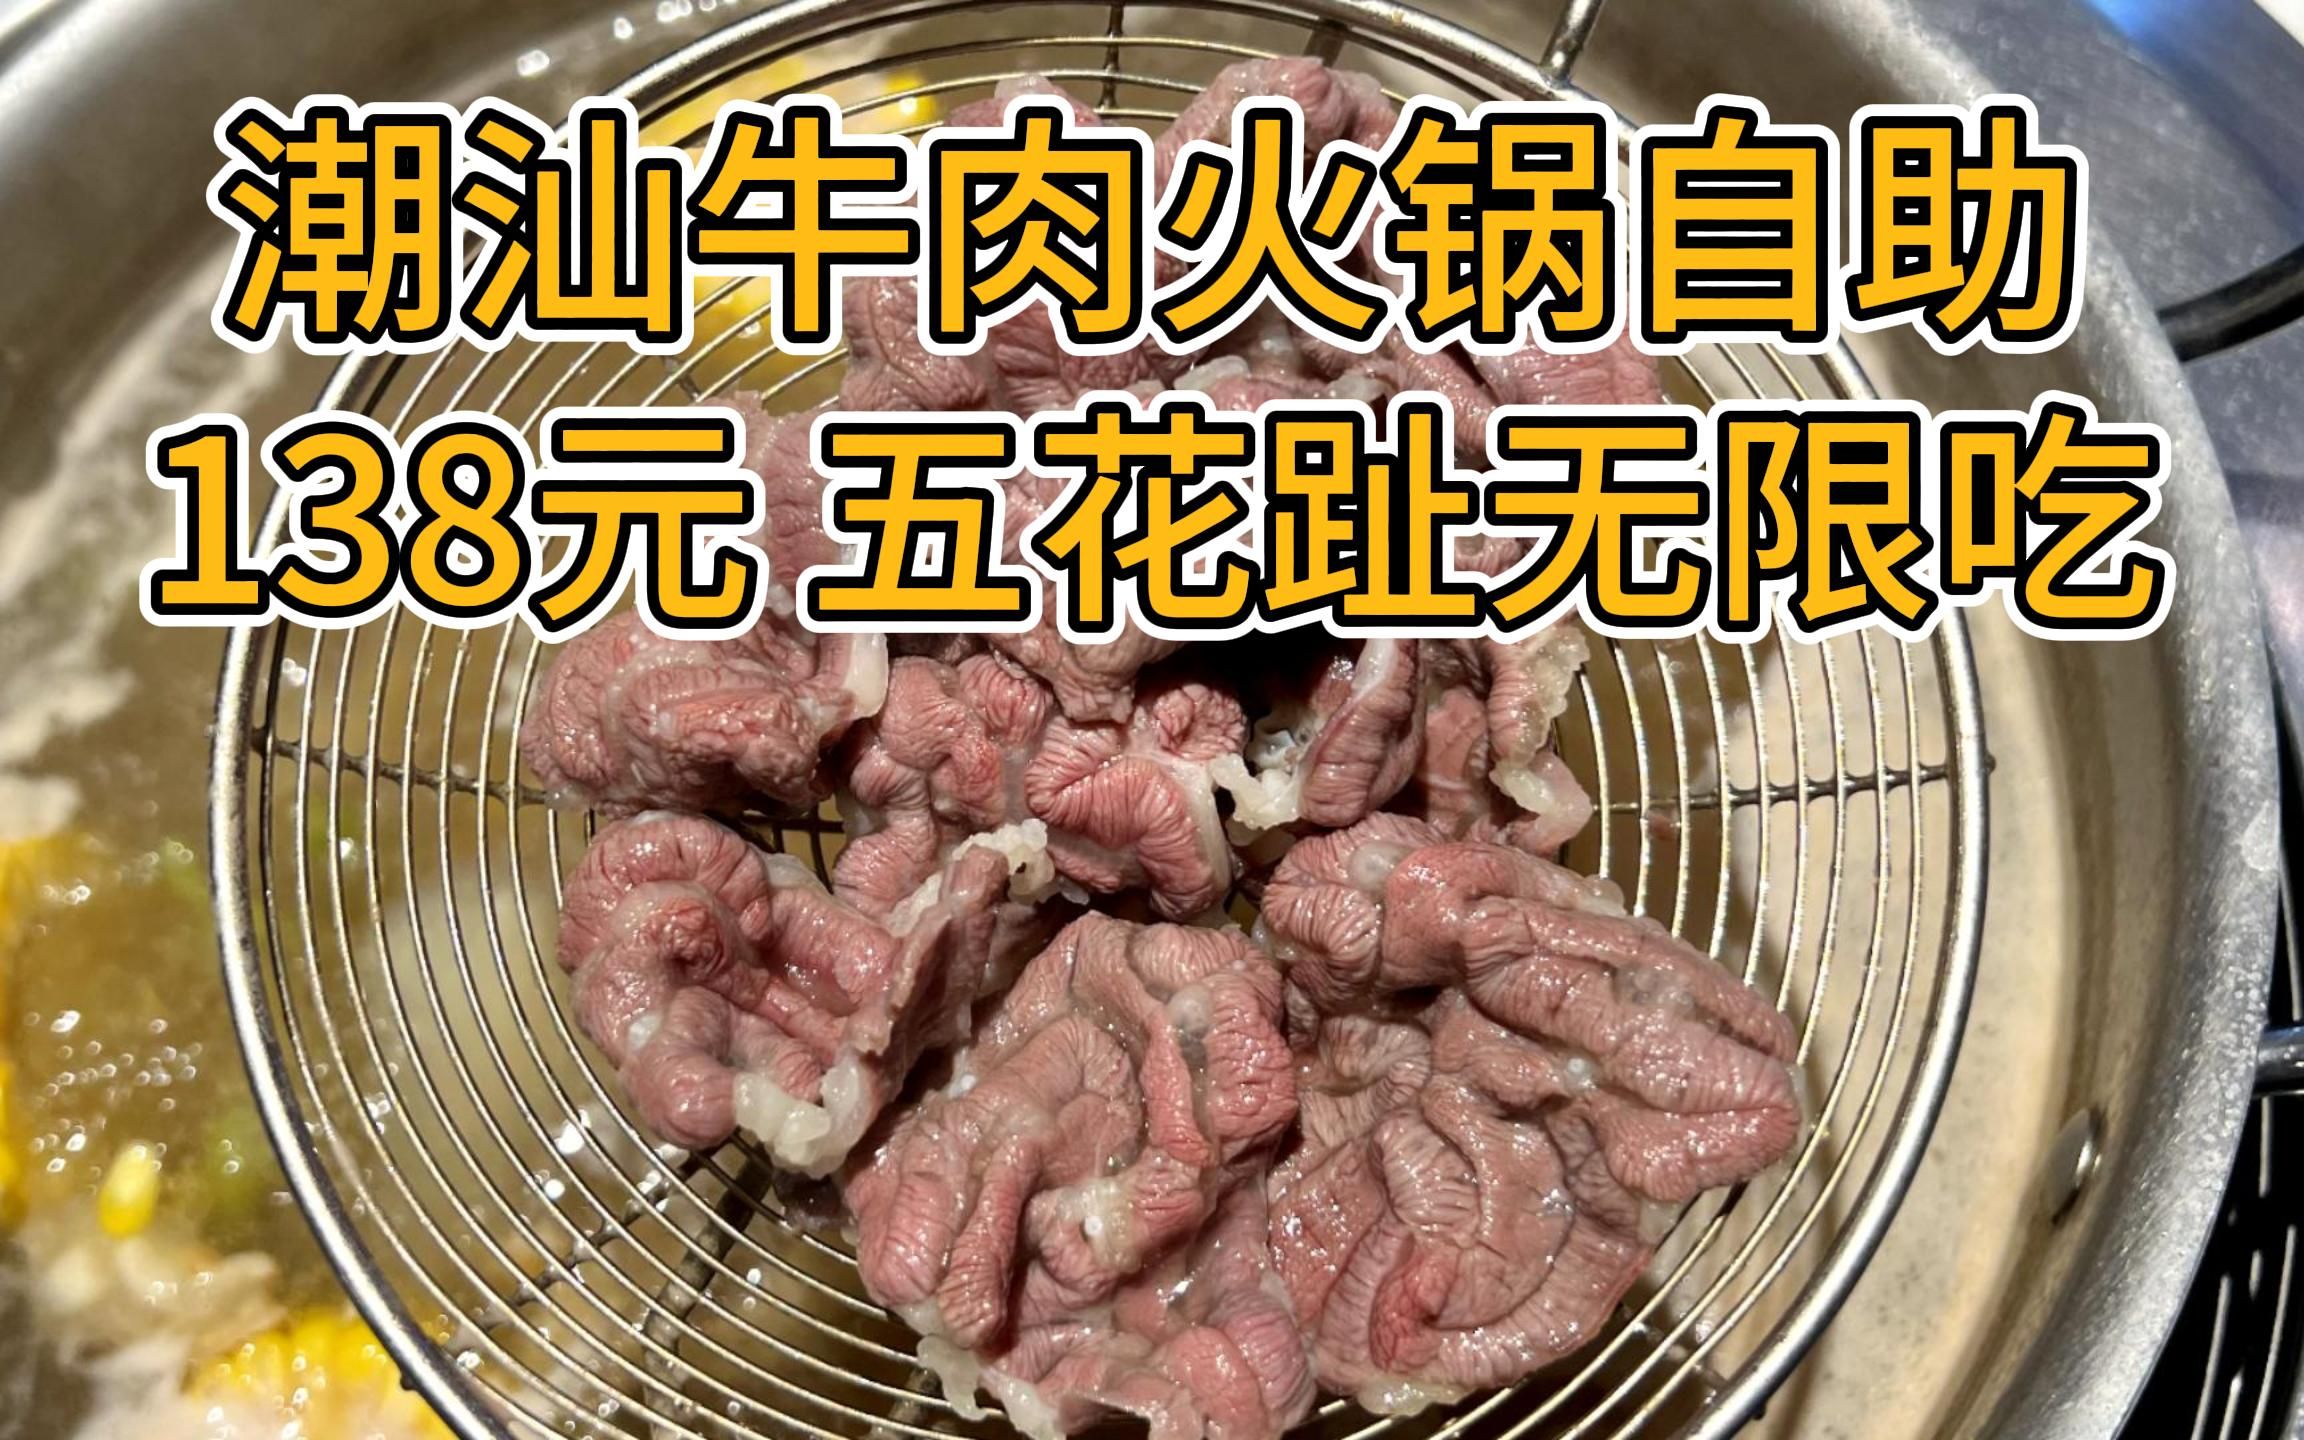 北京性价比天花板的潮汕牛肉火锅自助 只要138元